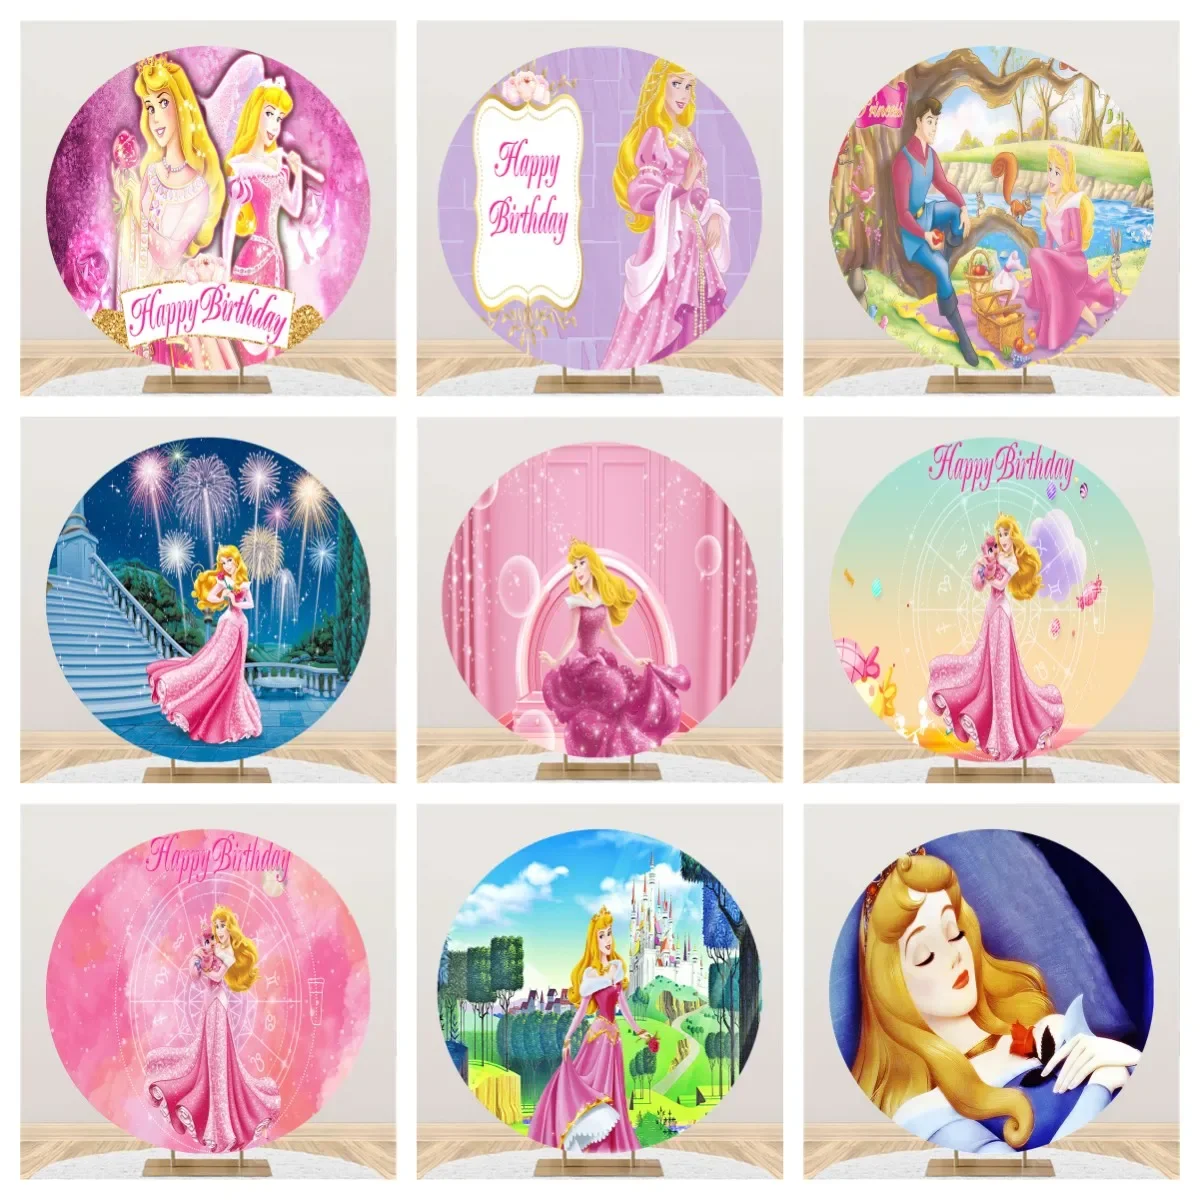 

Студийный фон для фотосъемки с изображением замка Disney Спящей красавицы принцессы Авроры мультфильма круга девушки на день рождения